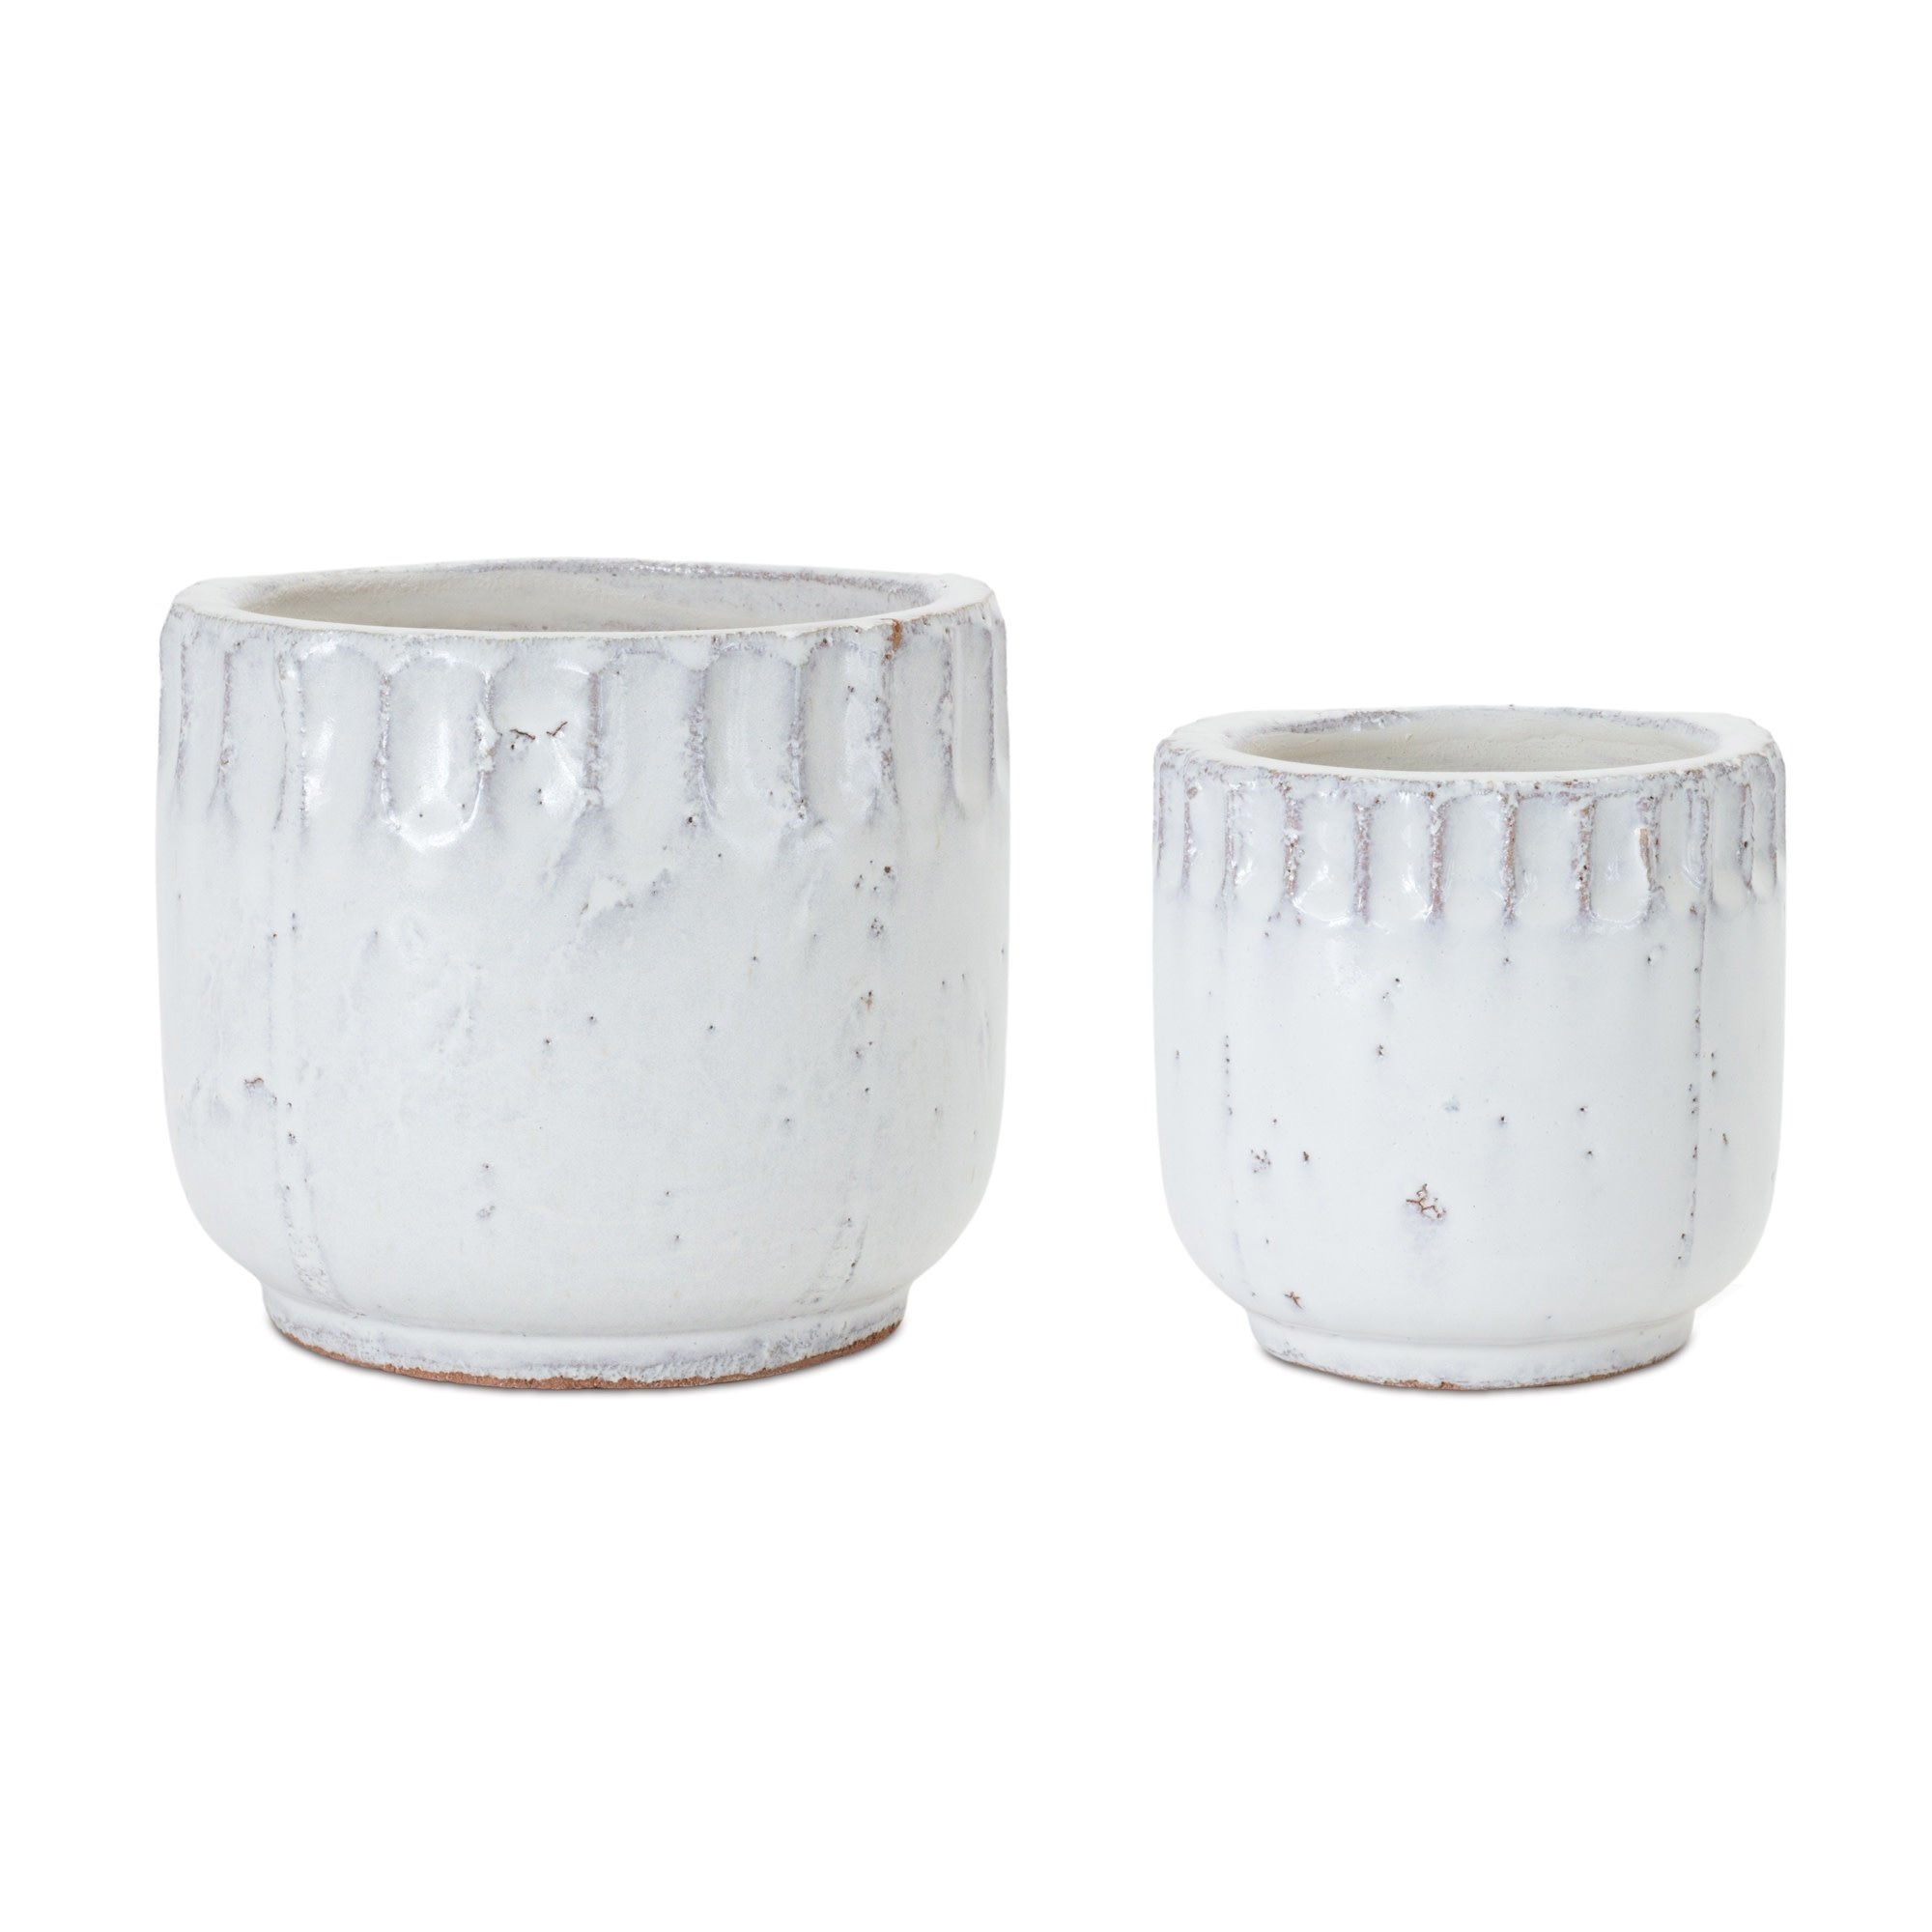 Ceramic White Textured Container (2-Sizes)